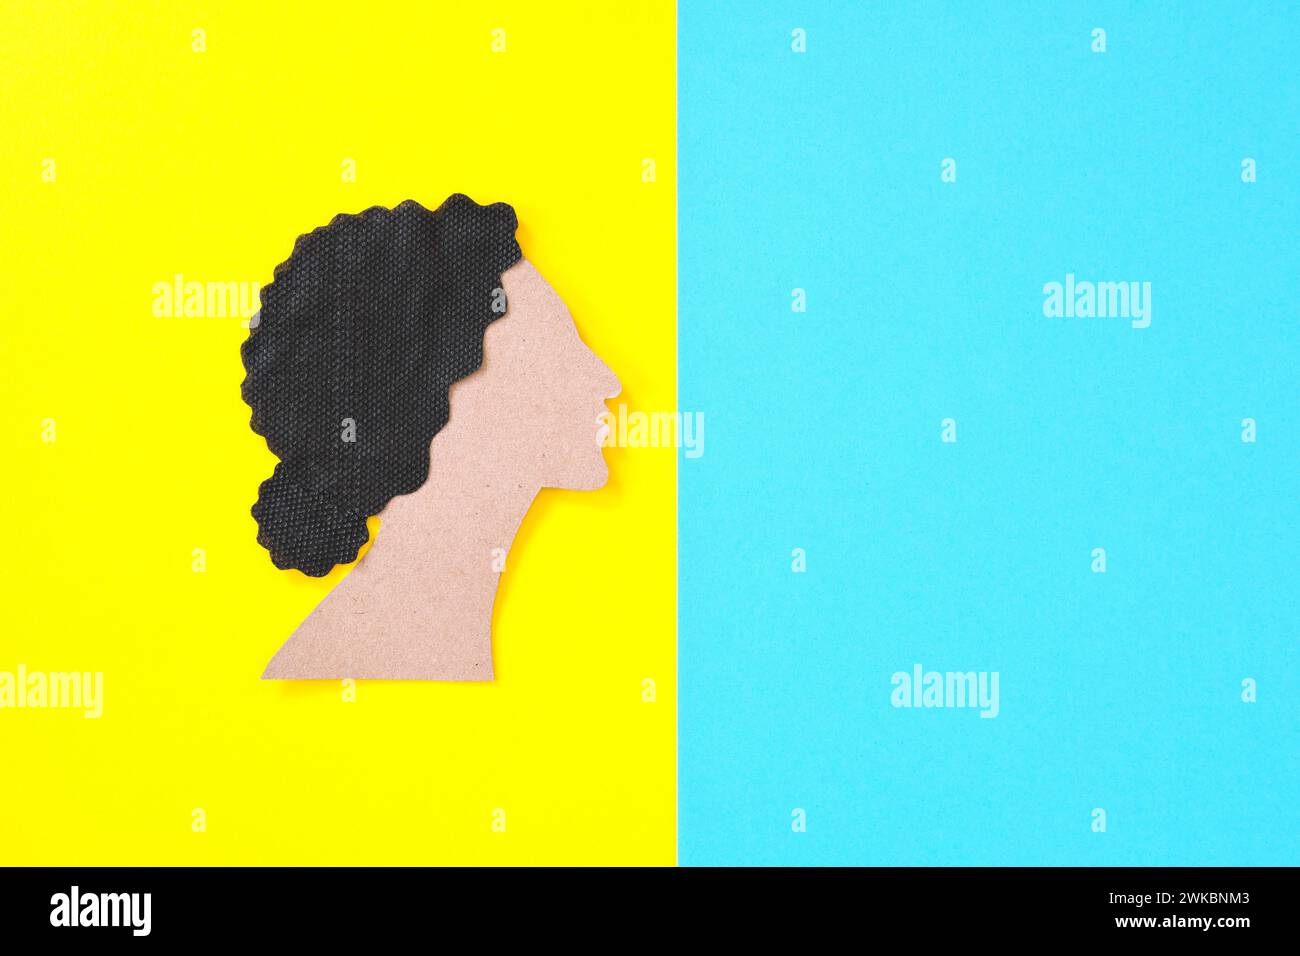 Brauner Frauenausschnitt in hellblauem und gelbem Hintergrund. Empowerment-Konzept für Frauen. Stockfoto